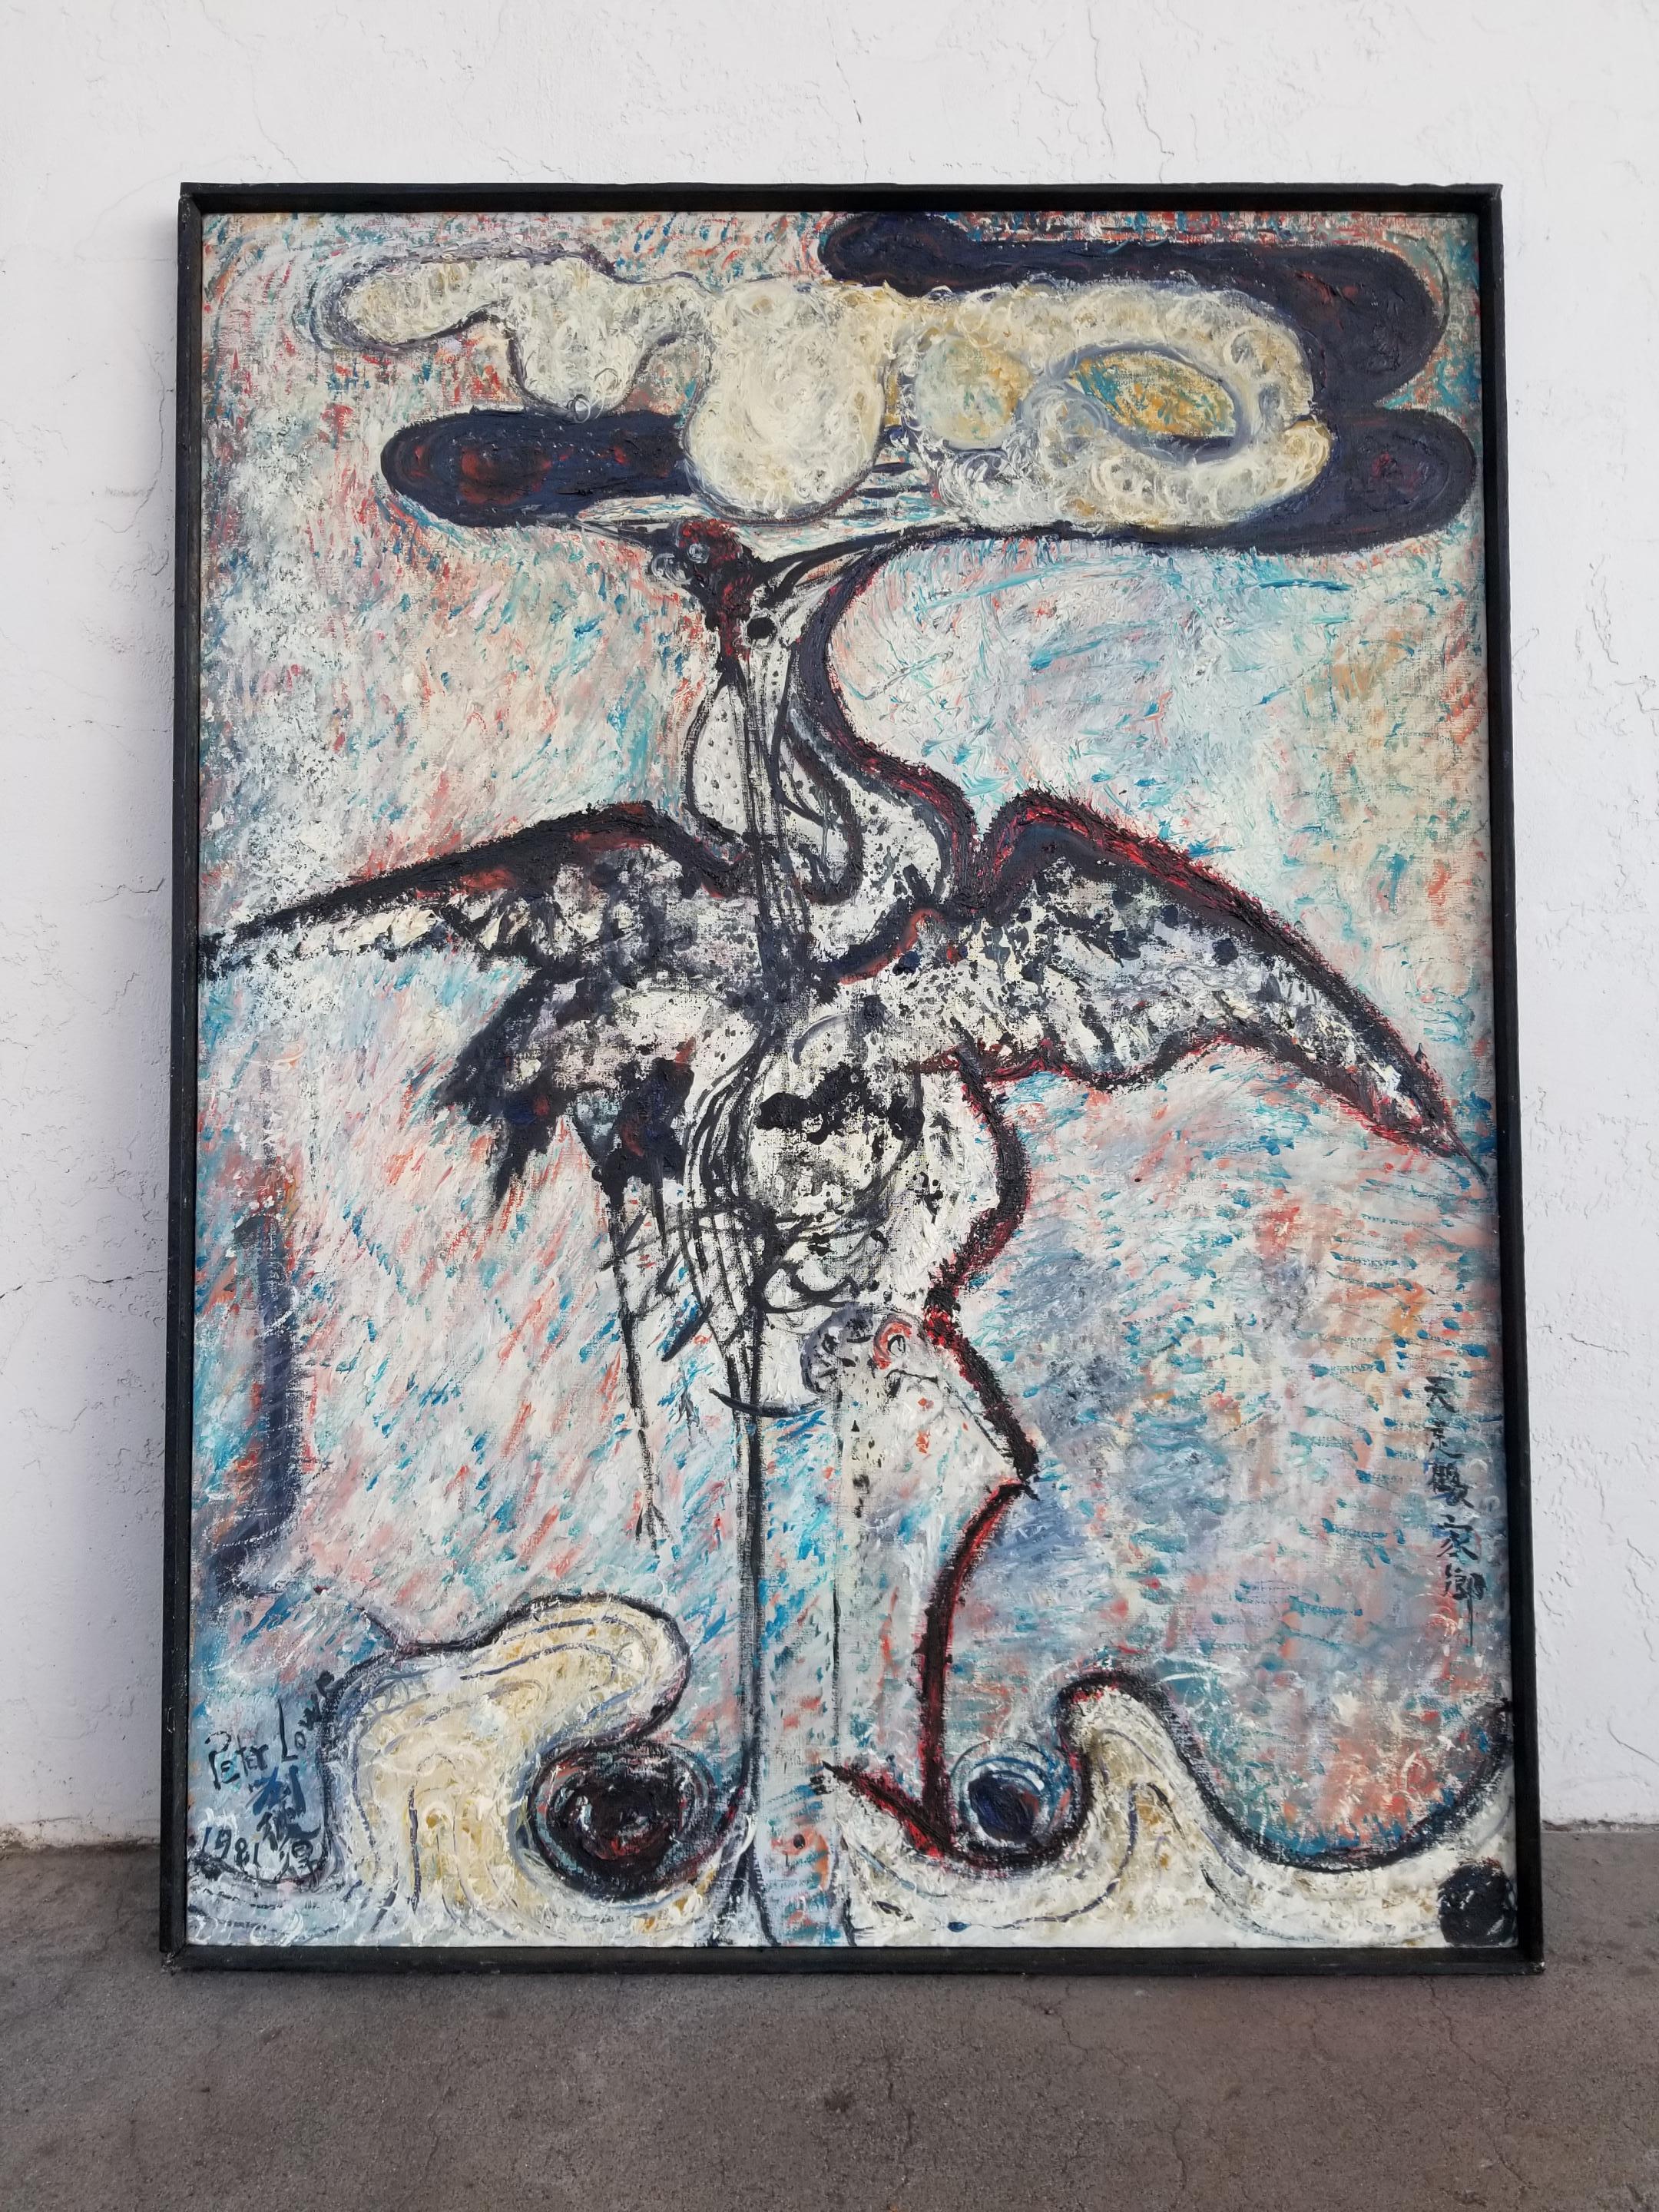 Peinture à l'huile abstraite de la fin du XXe siècle représentant un oiseau, réalisée par l'artiste californien Peter Lowe. Peinture sur toile très texturée. Monté dans un cadre rustique en bois peint d'origine. Signé et daté en bas à gauche, 1981.